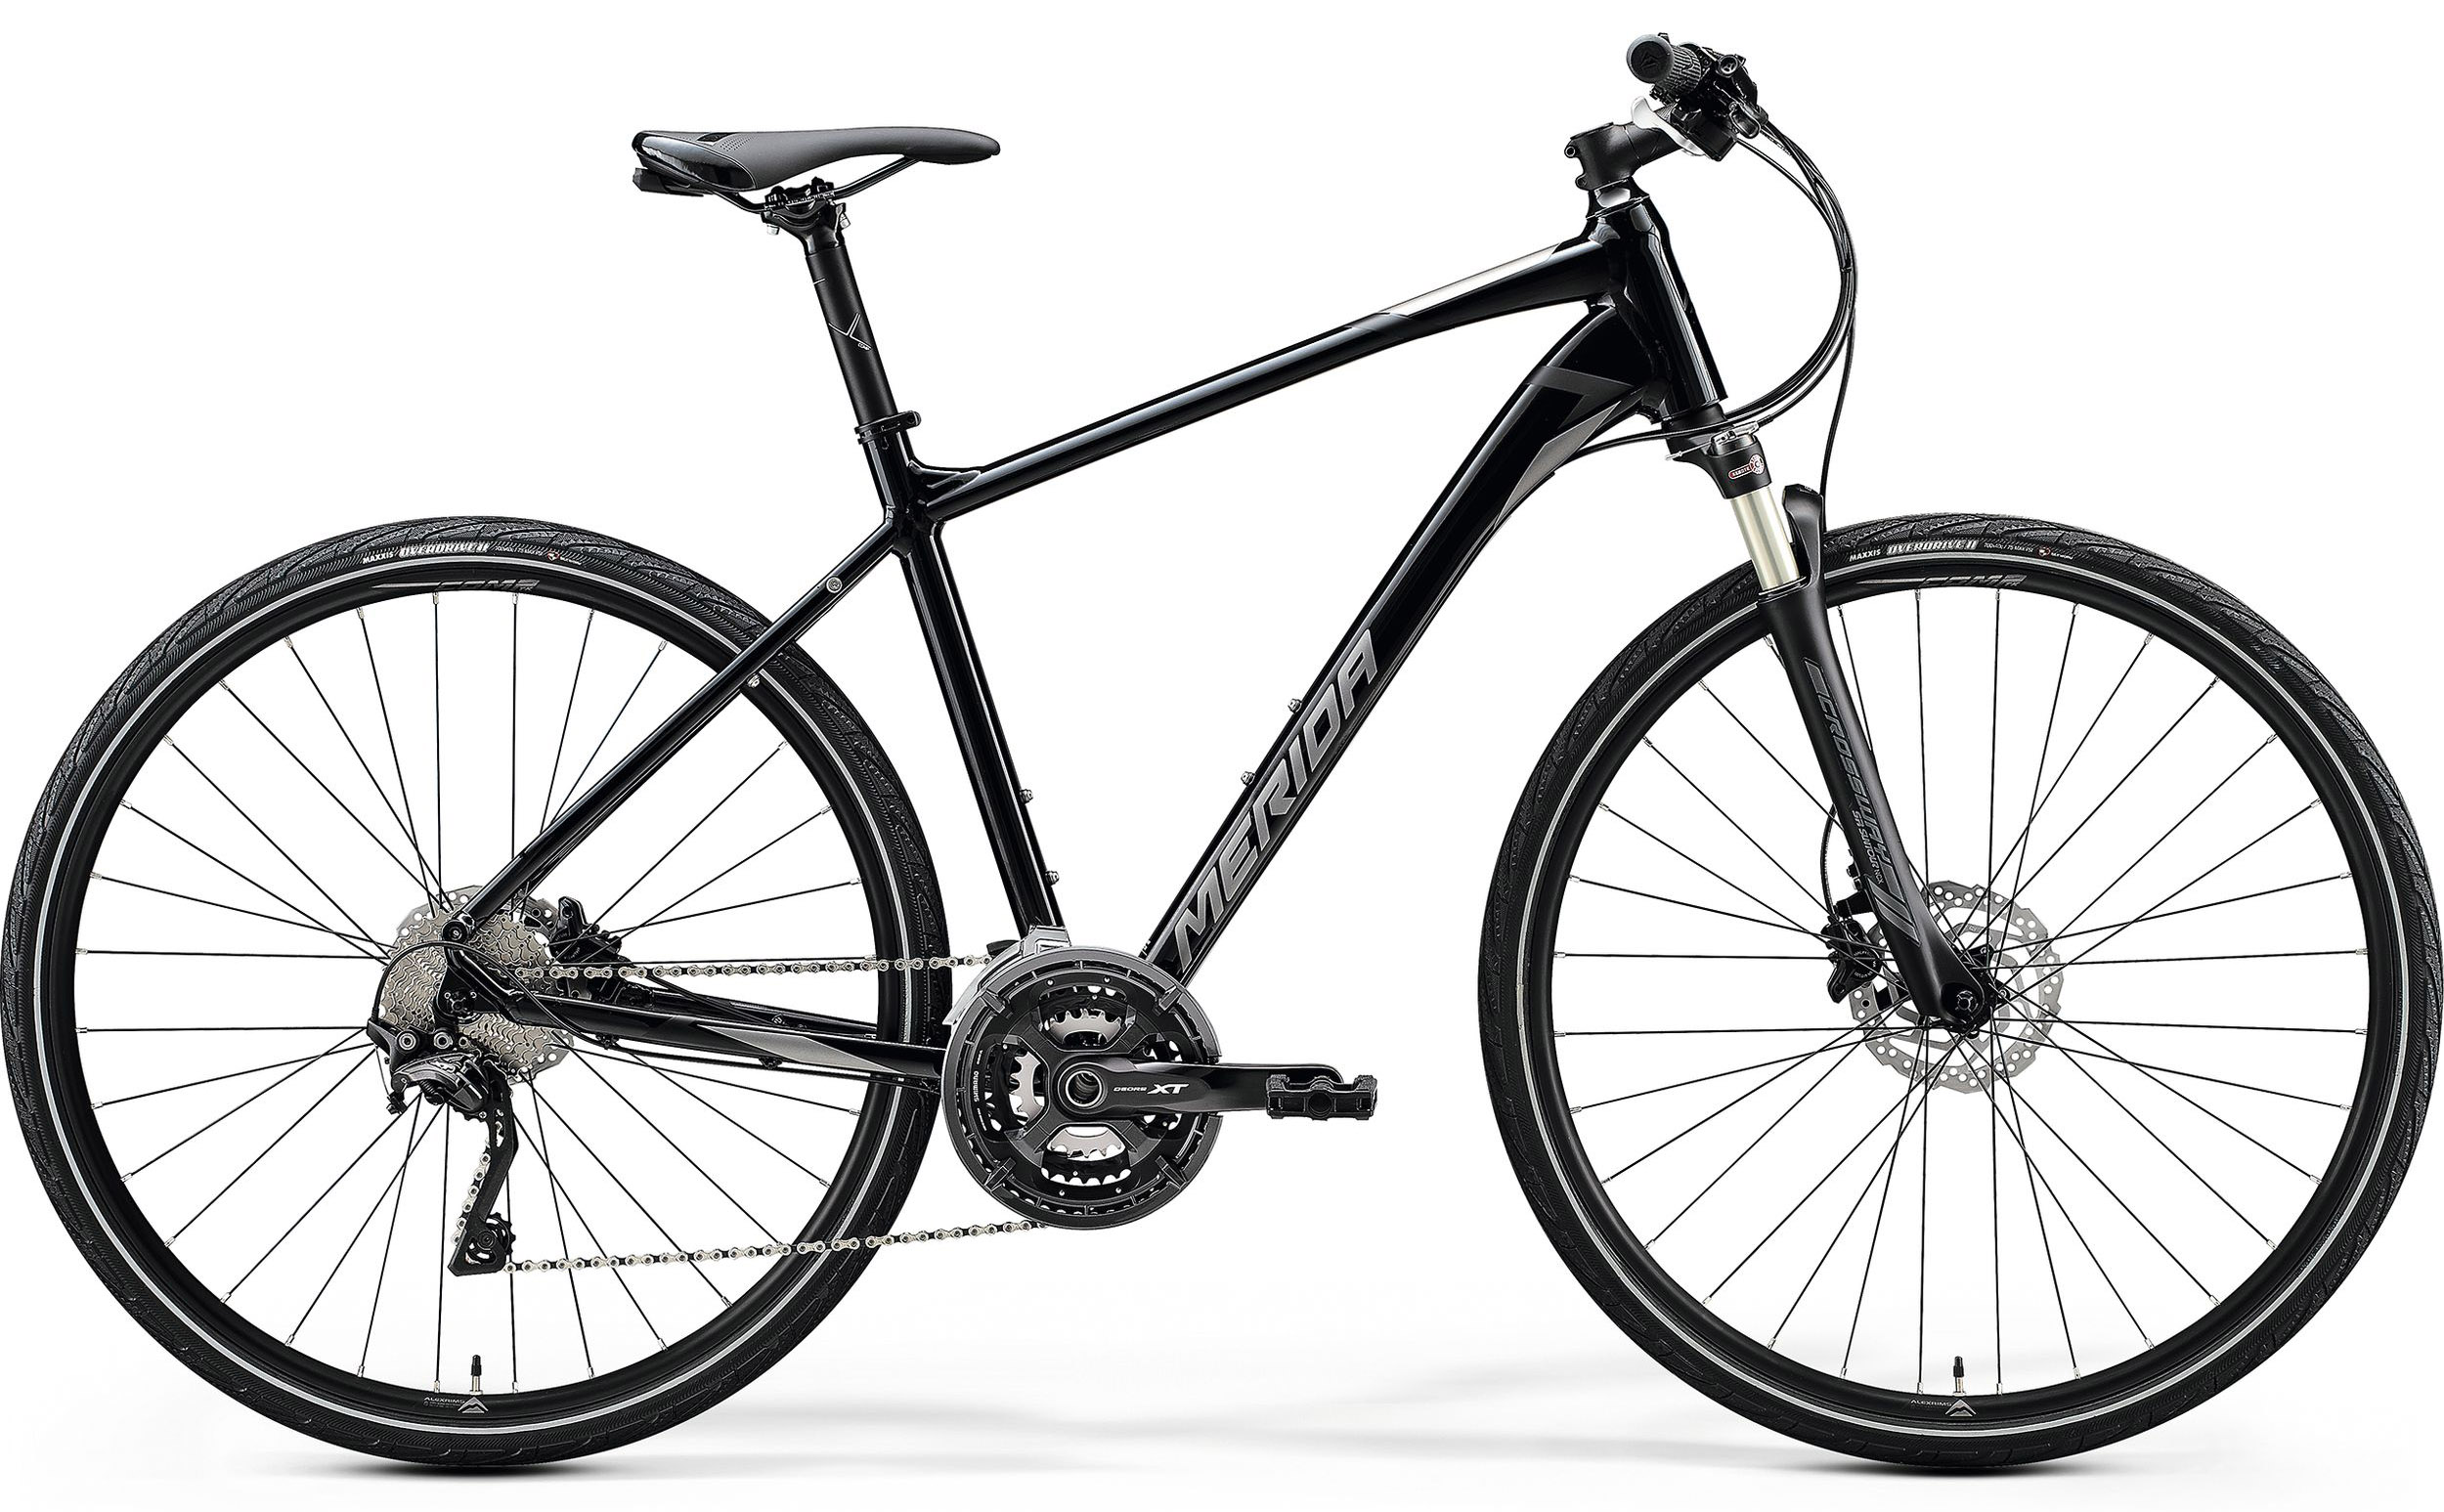  Отзывы о Городском велосипеде Merida Crossway XT Edition 2020